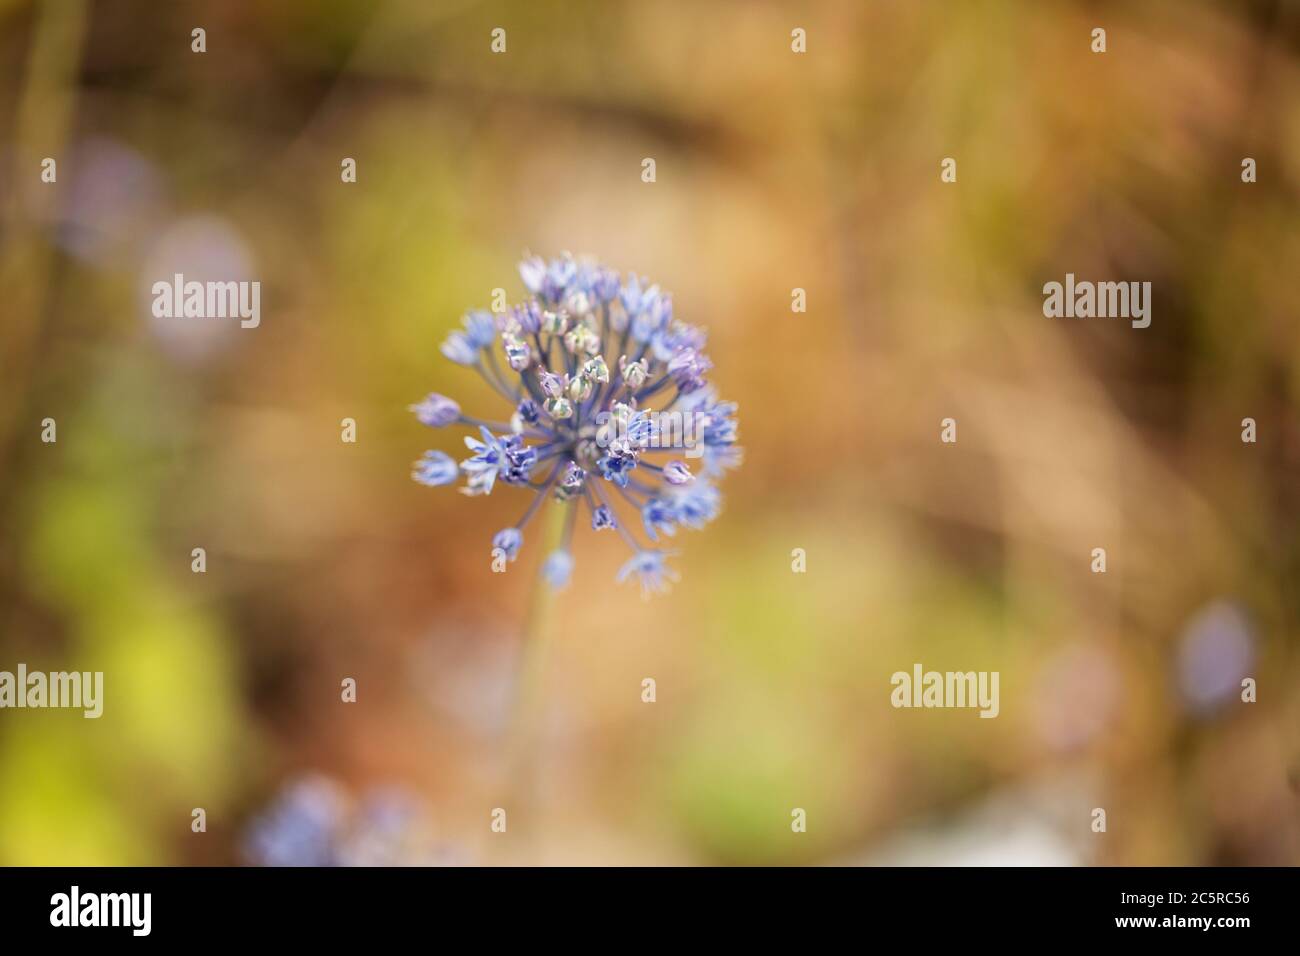 Allium Caeruleum, o cipolla ornamentale blu, fiorente in un giardino estivo. Conosciuta anche come cipolla globo blu, blu dei cieli, o aglio fiorito blu. Foto Stock